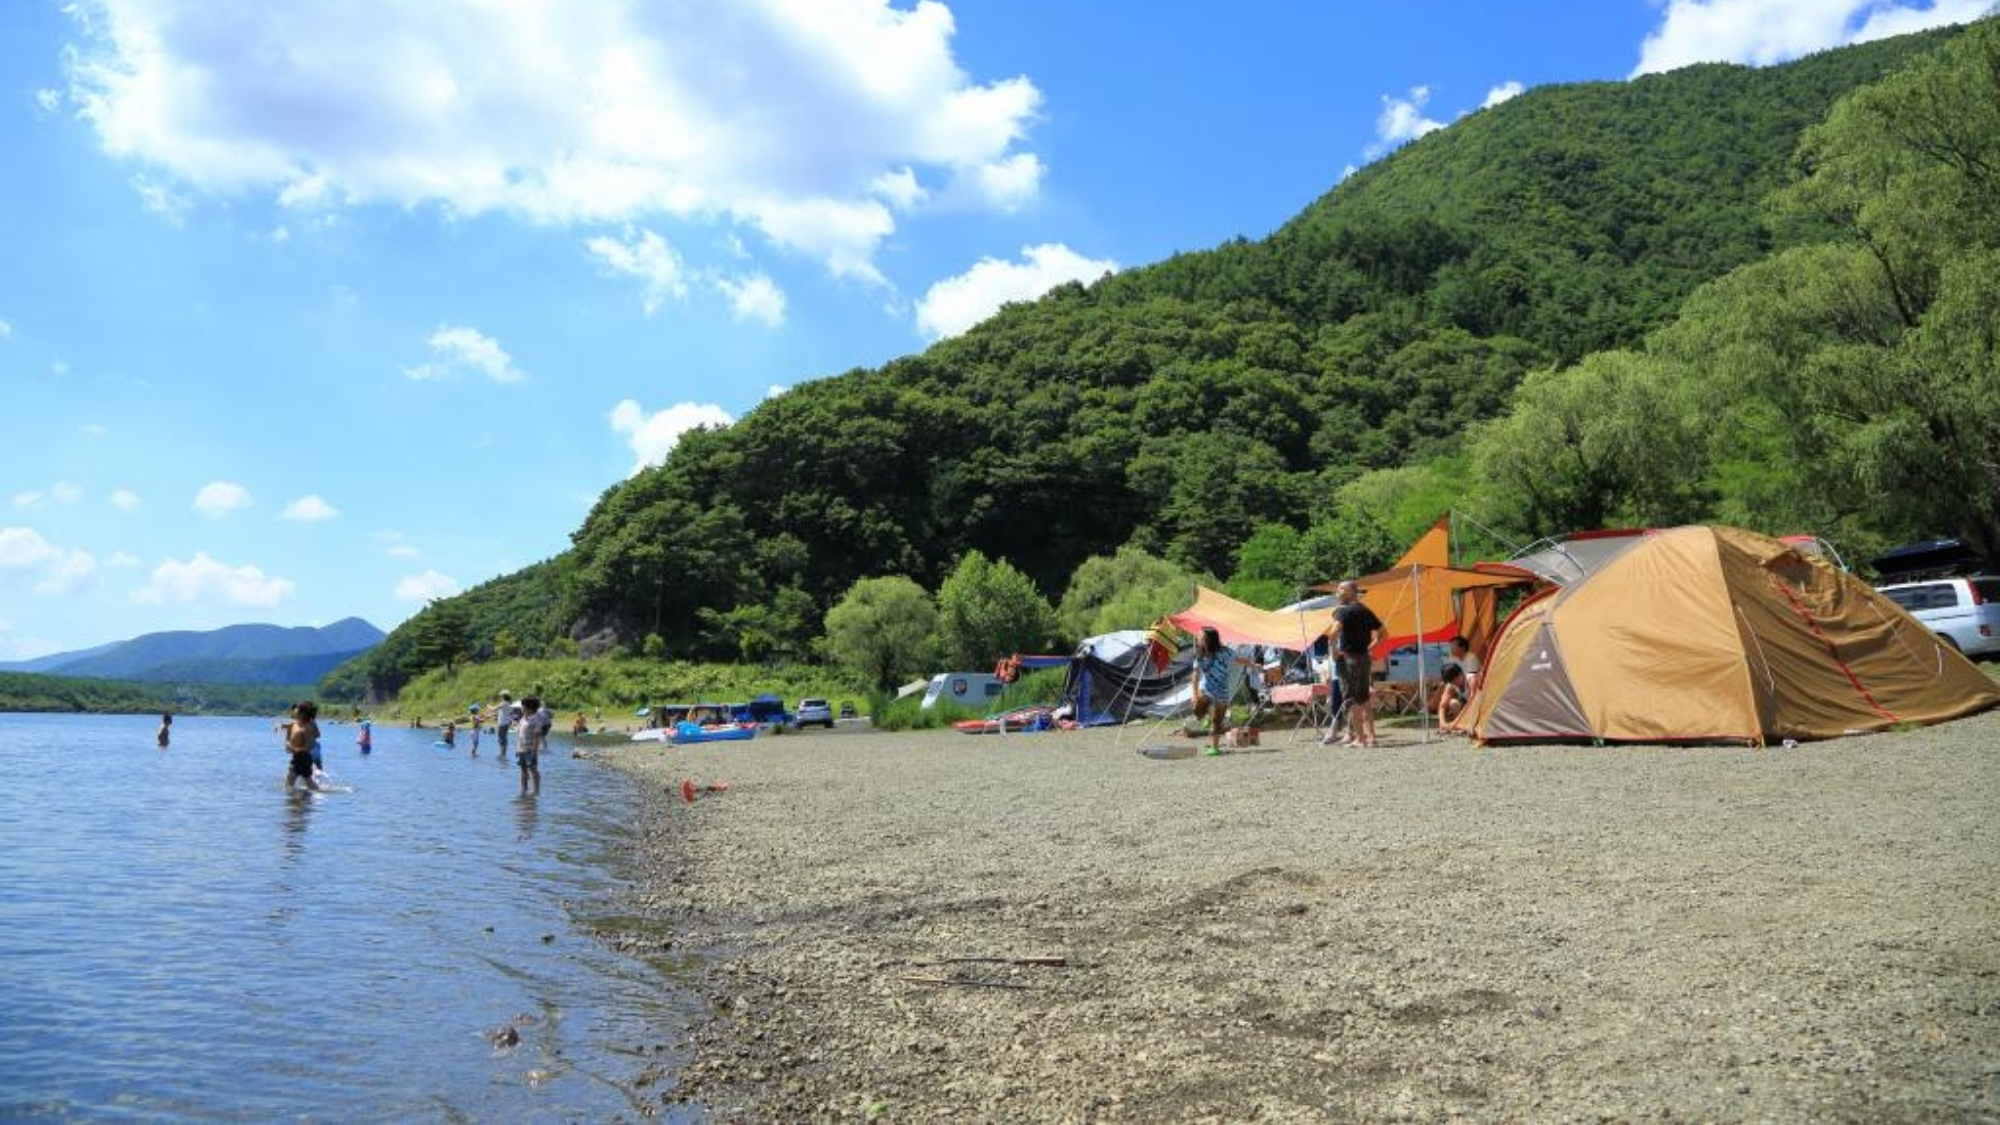  富士五湖の各湖の湖畔ではキャンプが楽しめます。